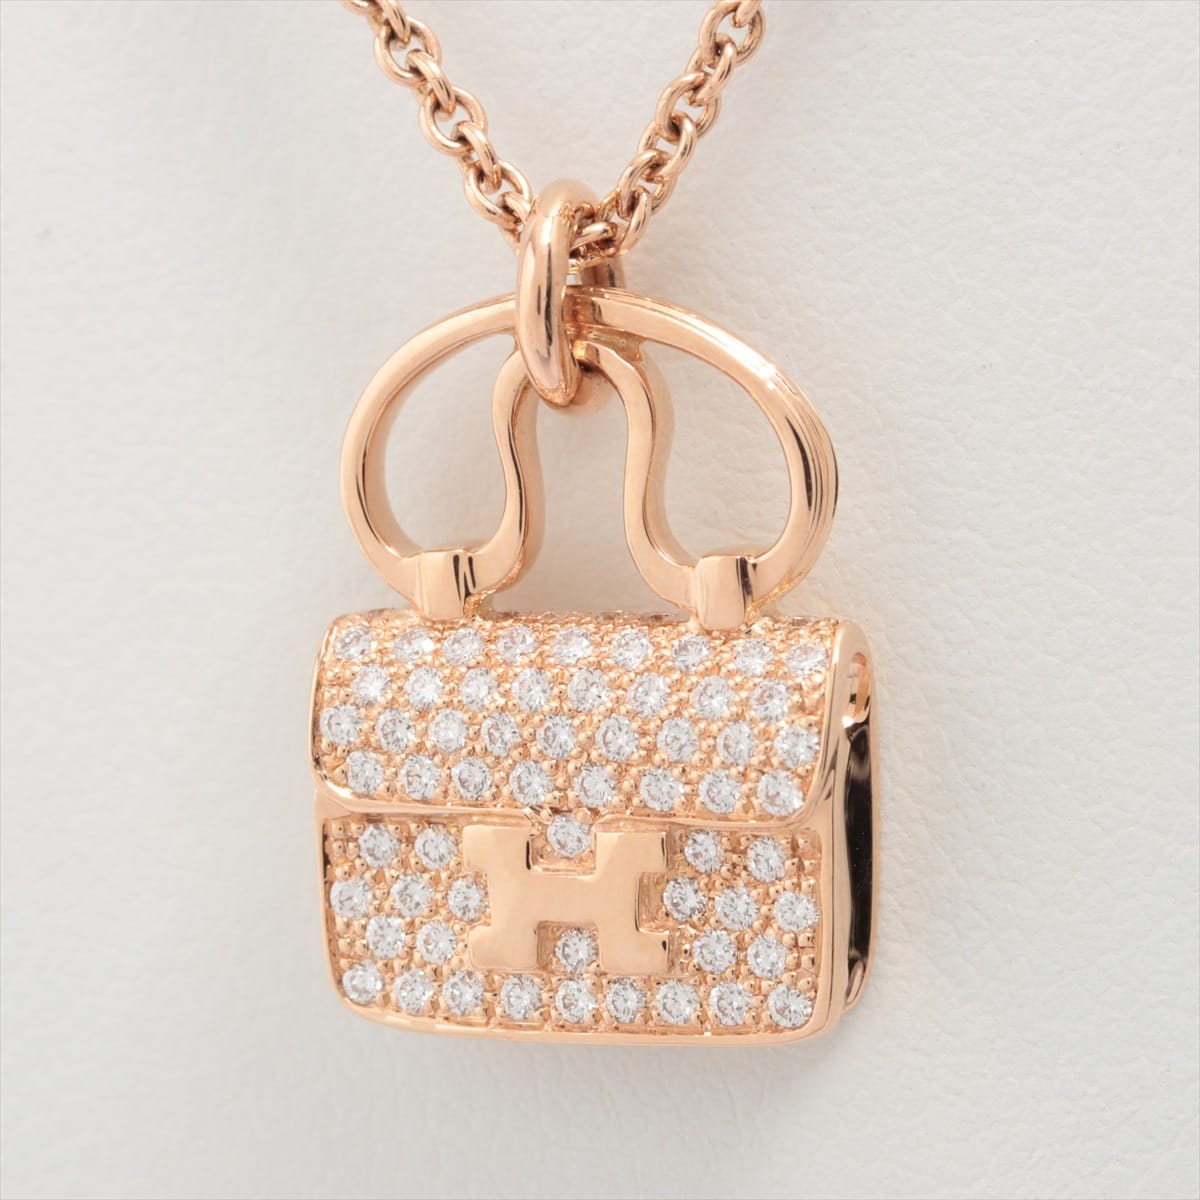 Hermès Constance diamond Necklace 750(PG) 9.4g